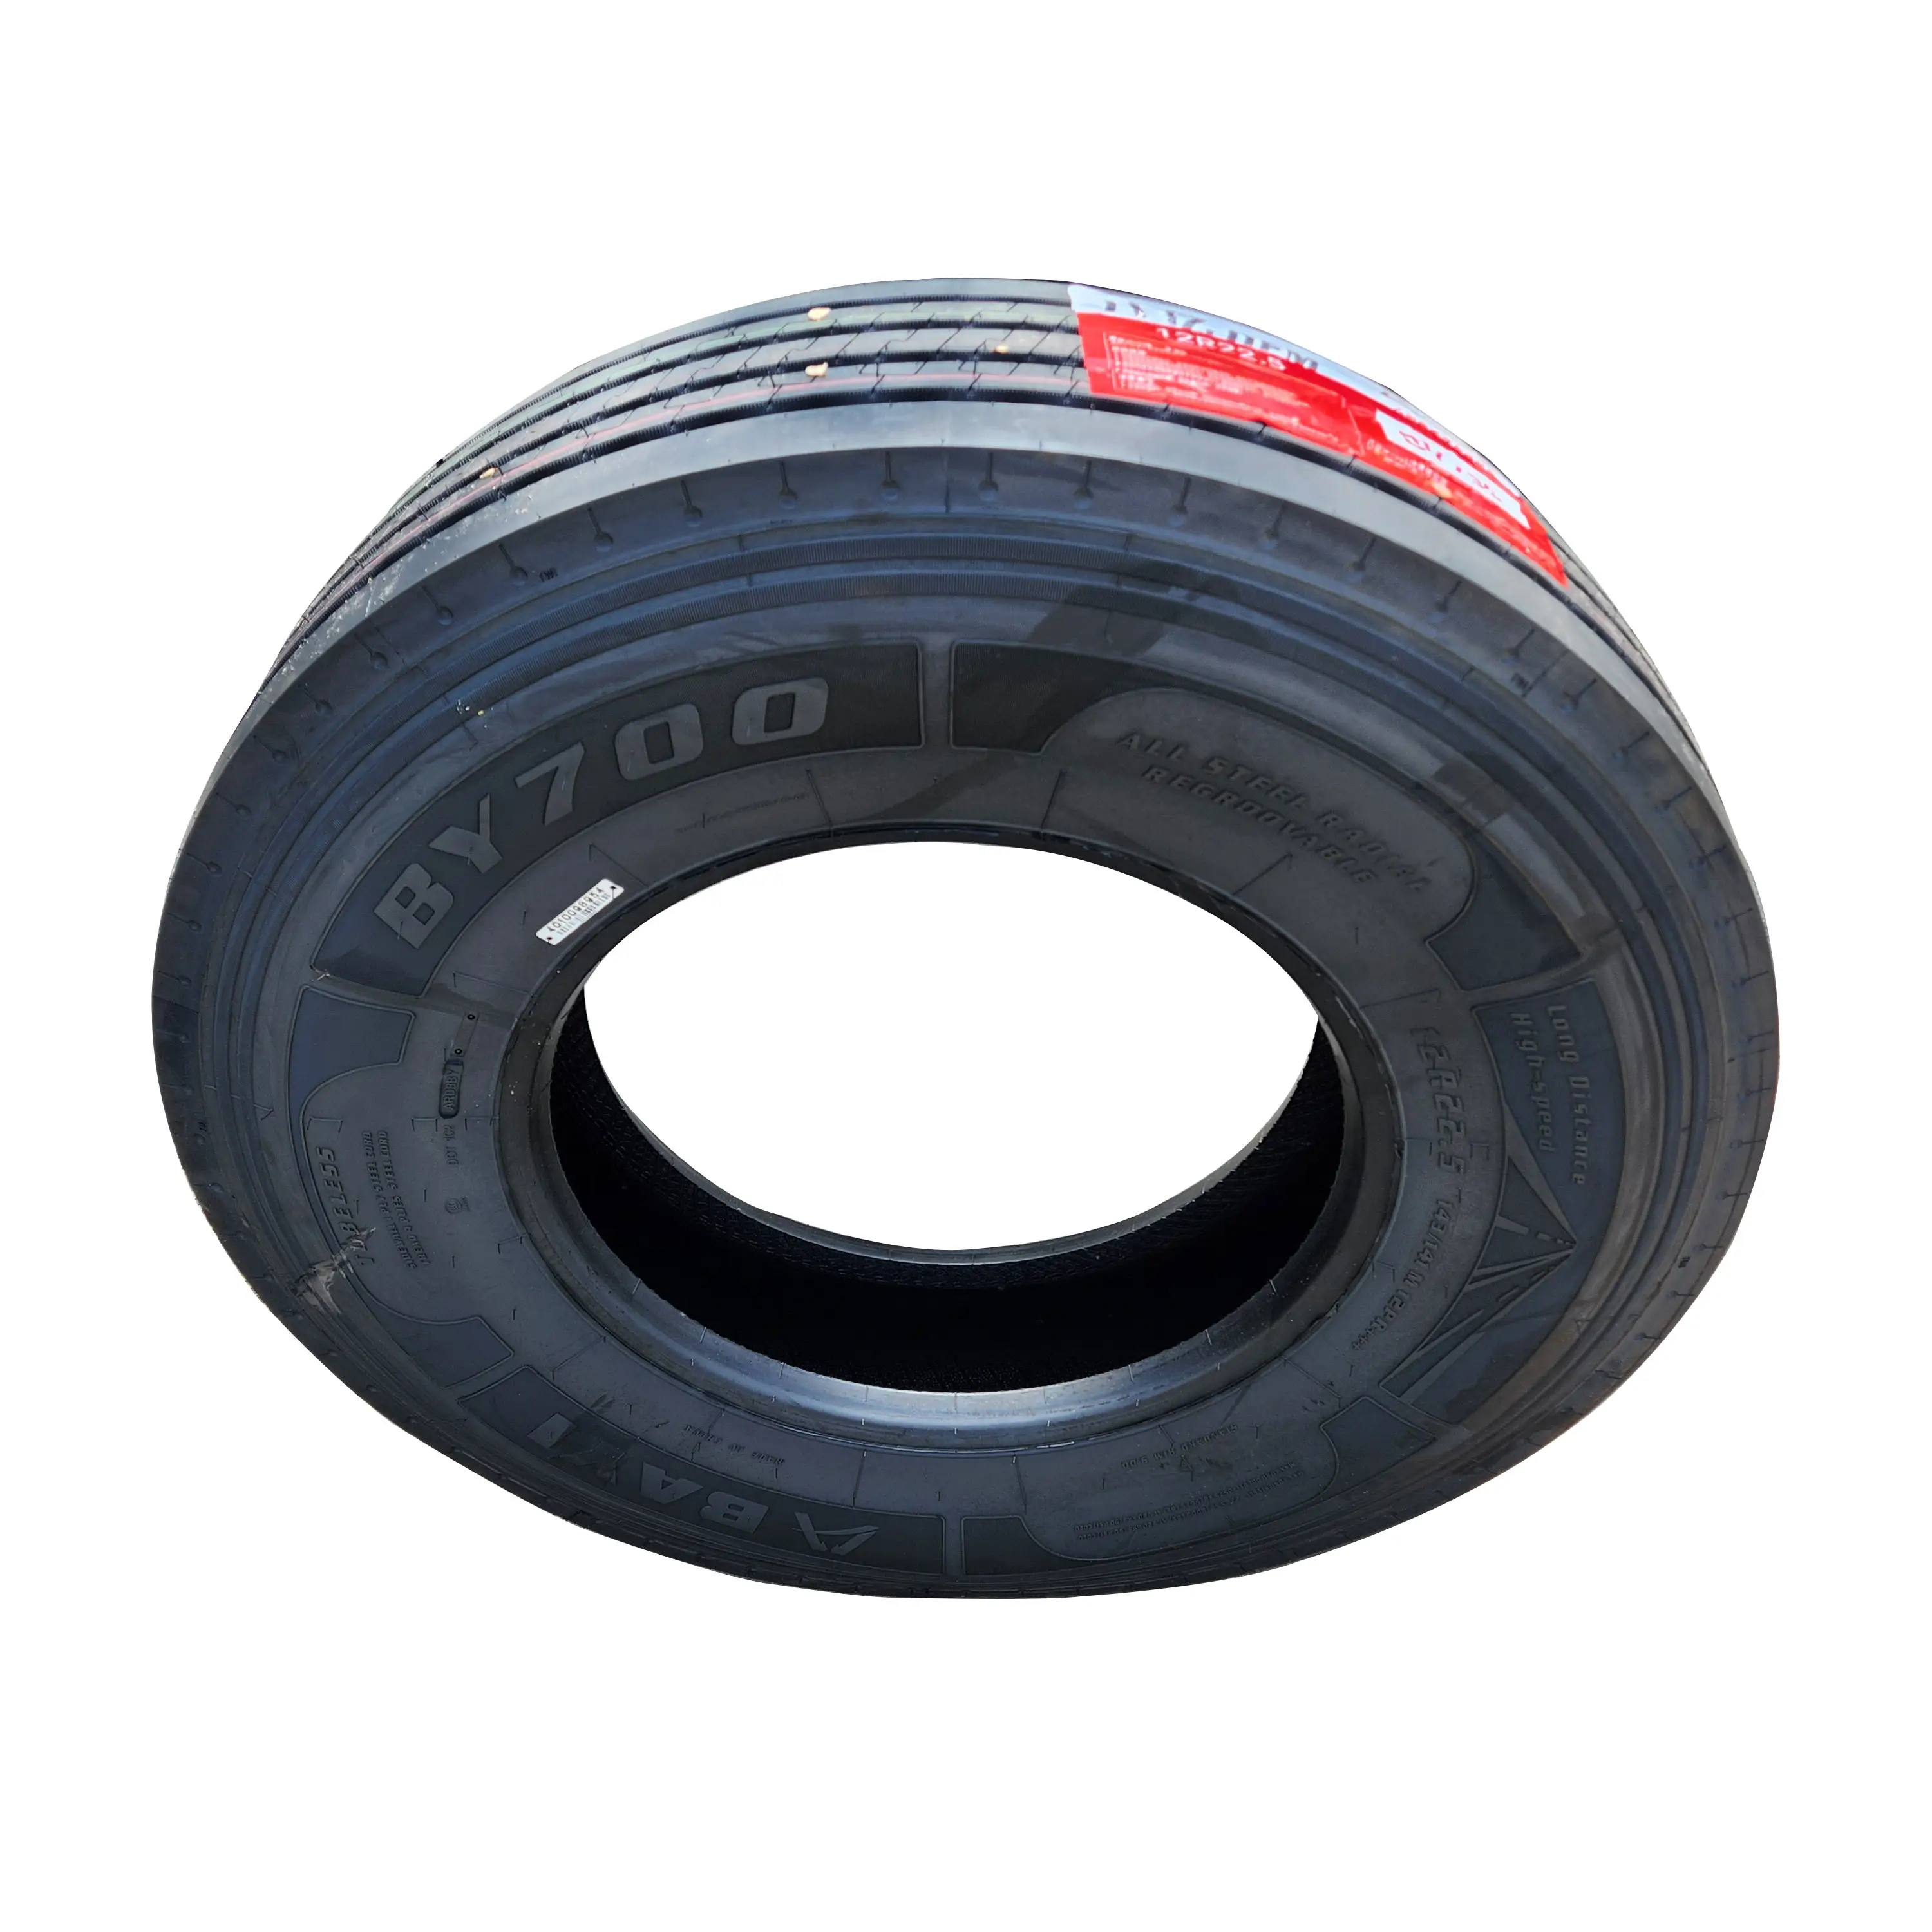 Preço de atacado pneus chineses de 12 a 24 polegadas, pneus chineses adequados para pneus de ônibus e caminhão